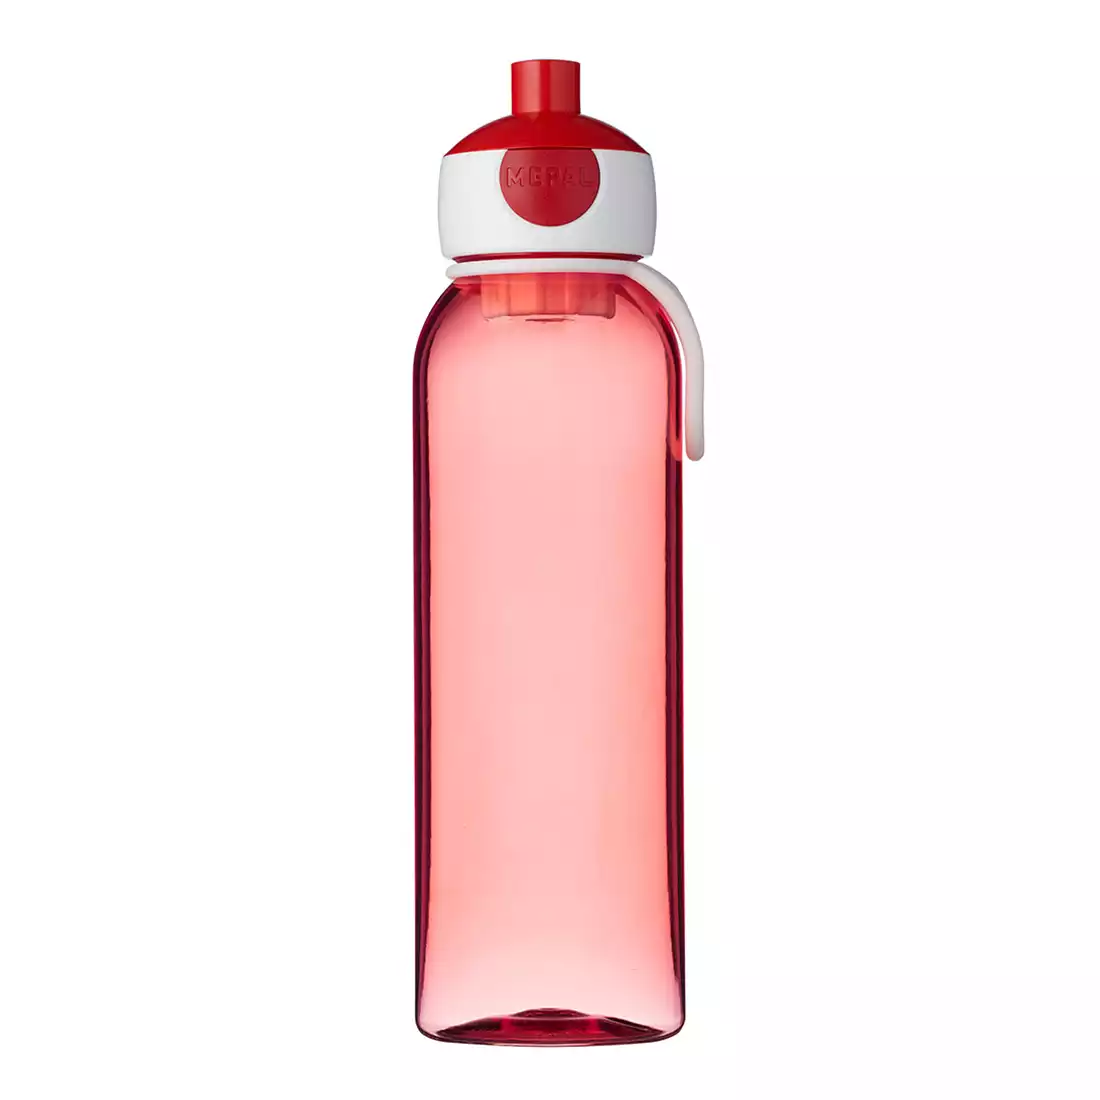 MEPAL CAMPUS sticla de apa 500ml, roșu